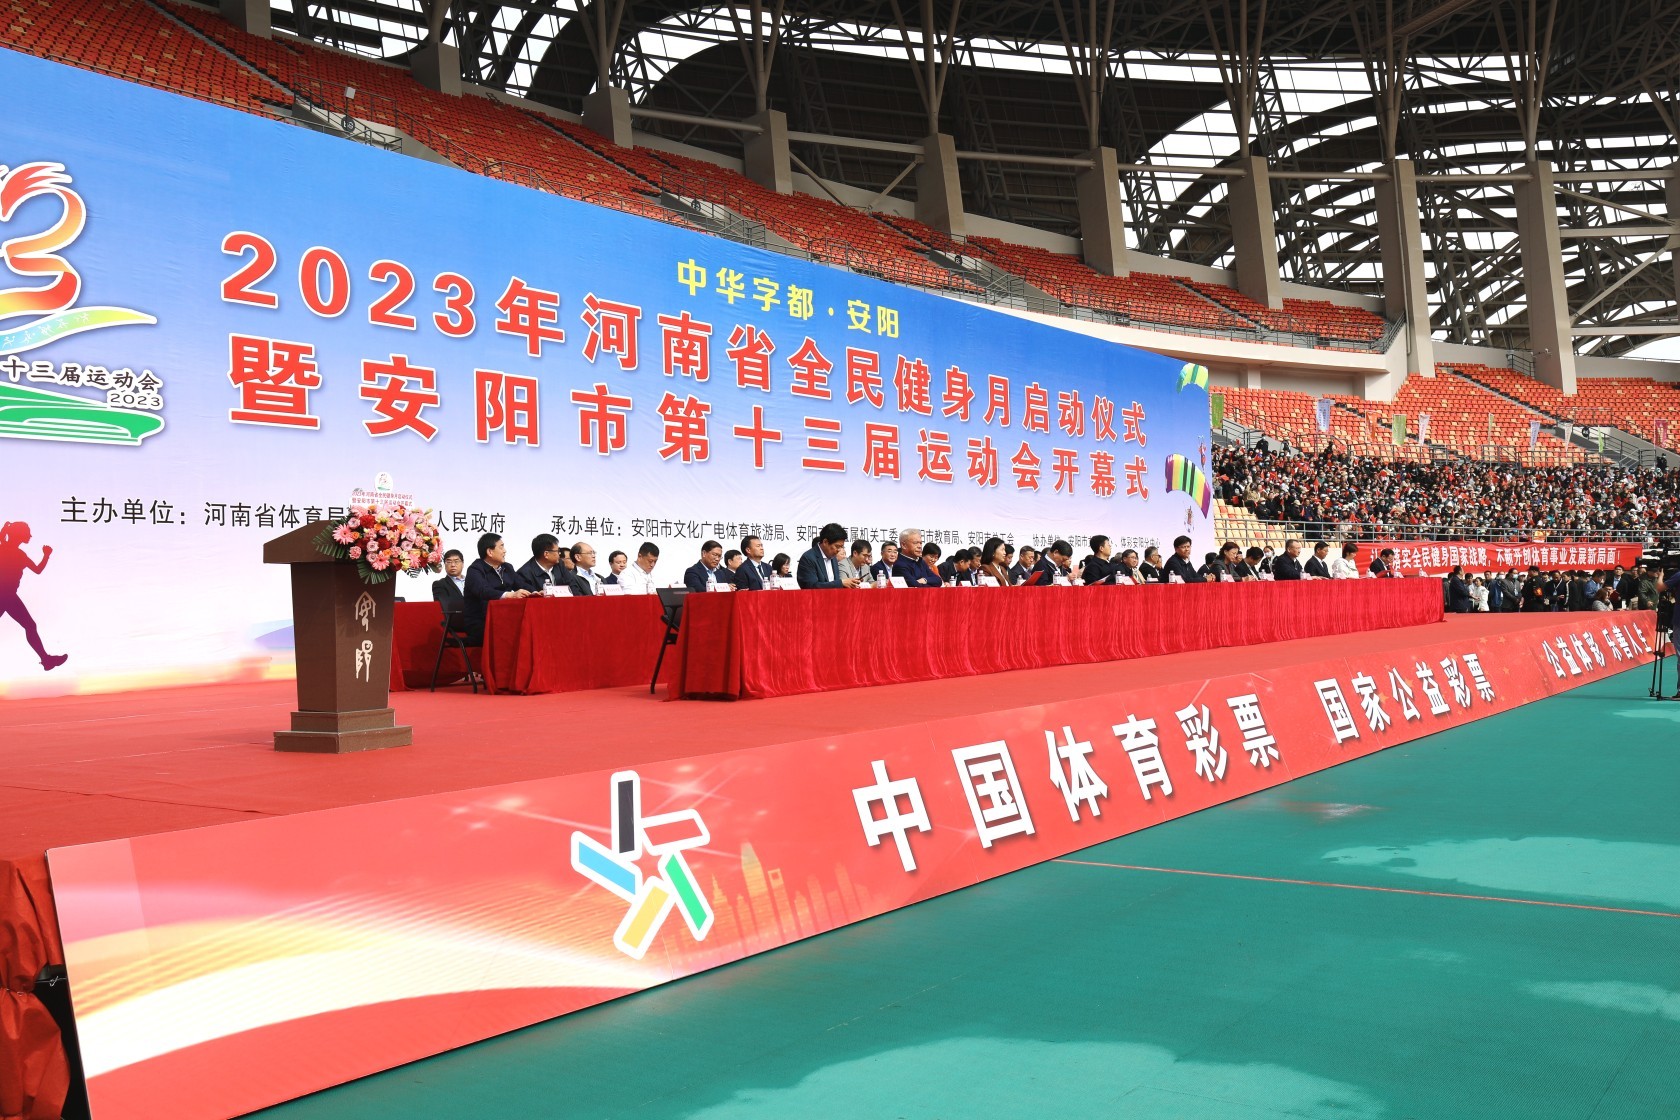 2023年河南省全民健身月启动仪式暨安阳市第十三届运动会开幕